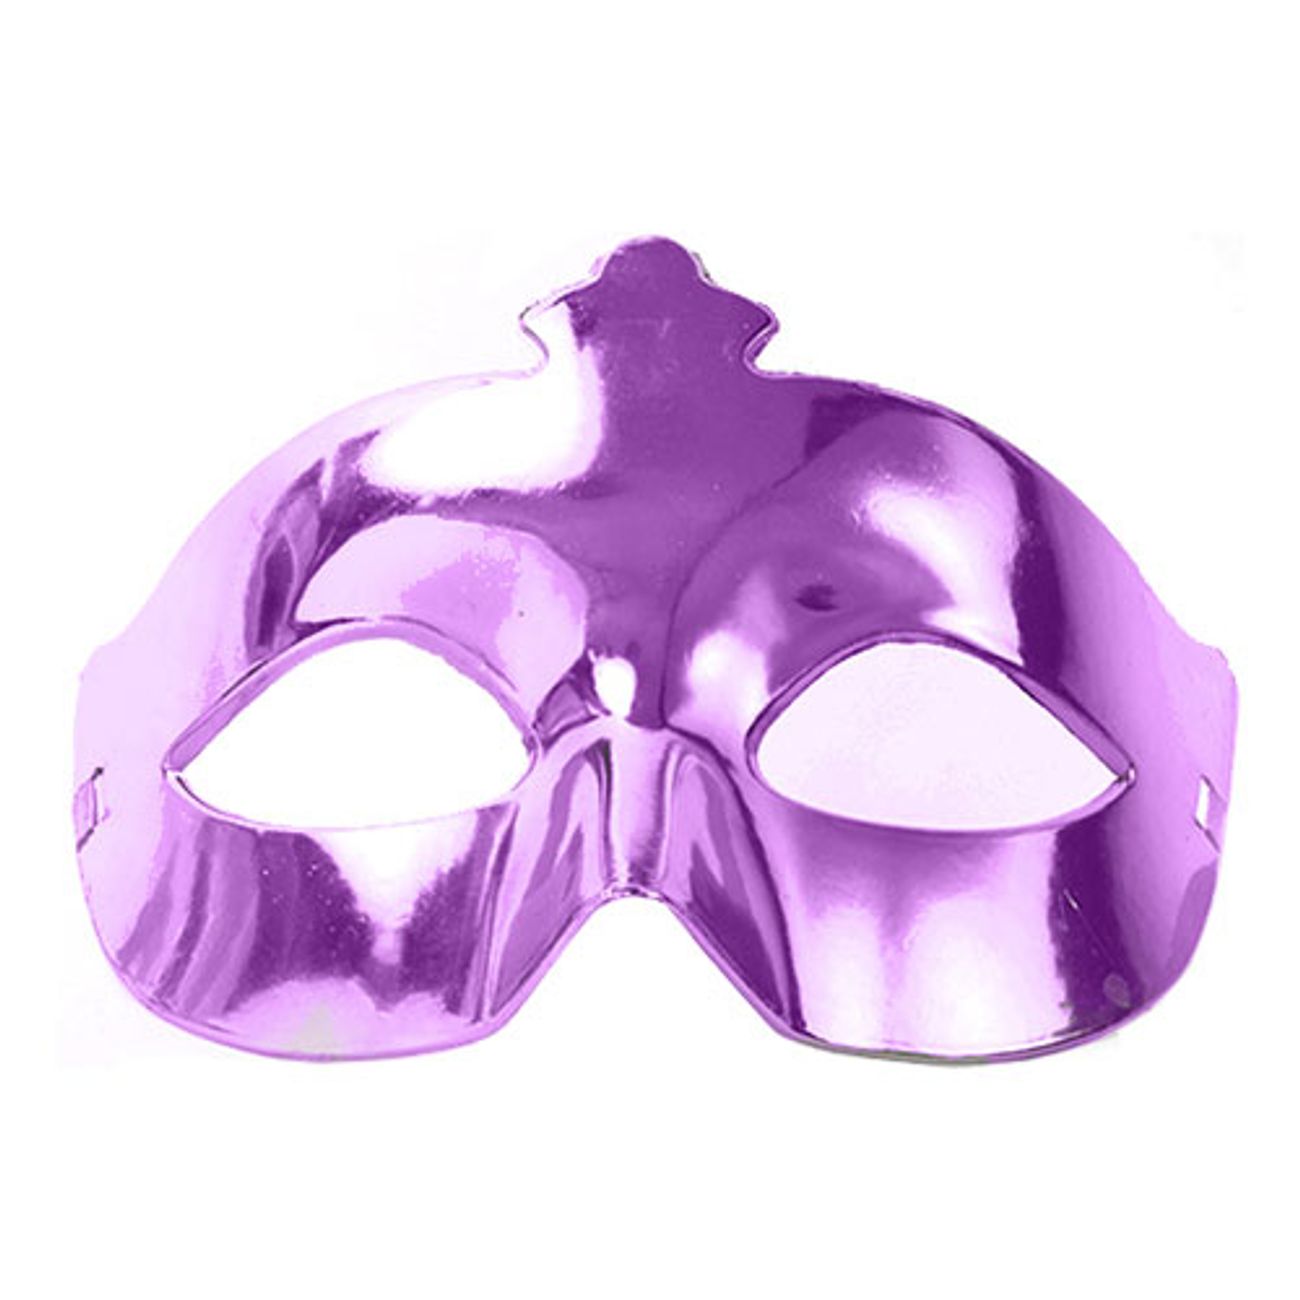 ogonmask-metallic-violett-1